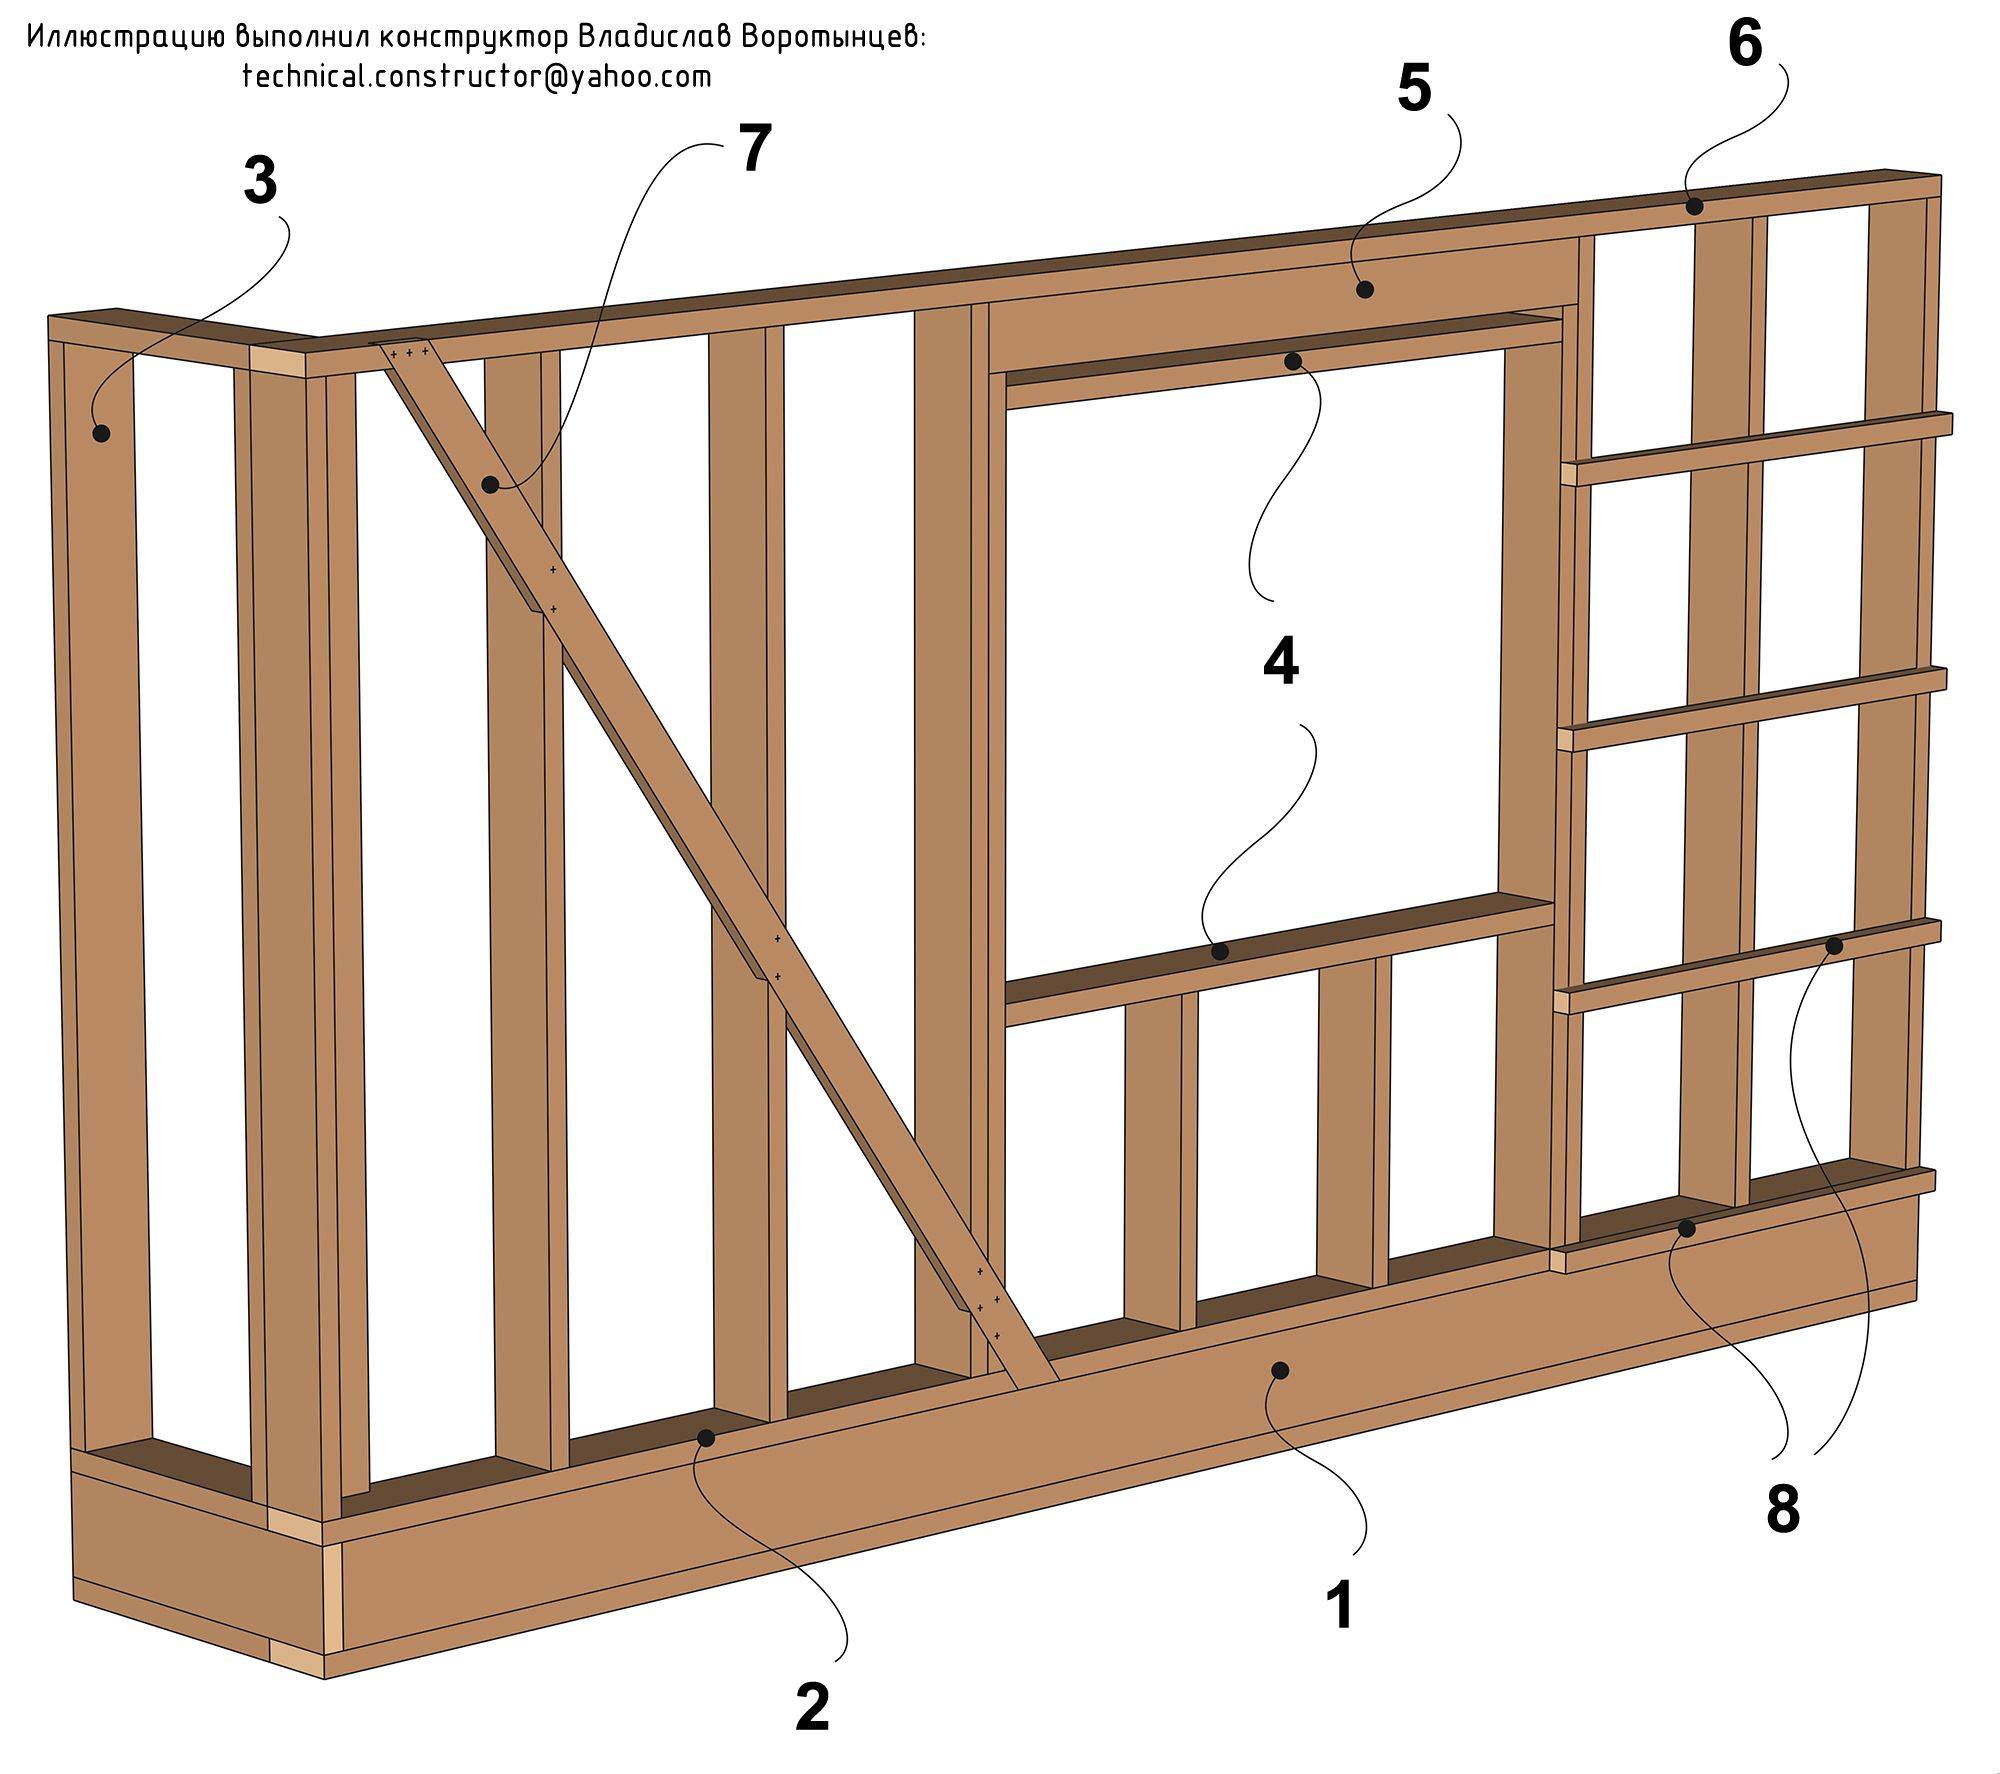 Как устроена конструкция стены каркасного деревянного дома: Обзор и типы